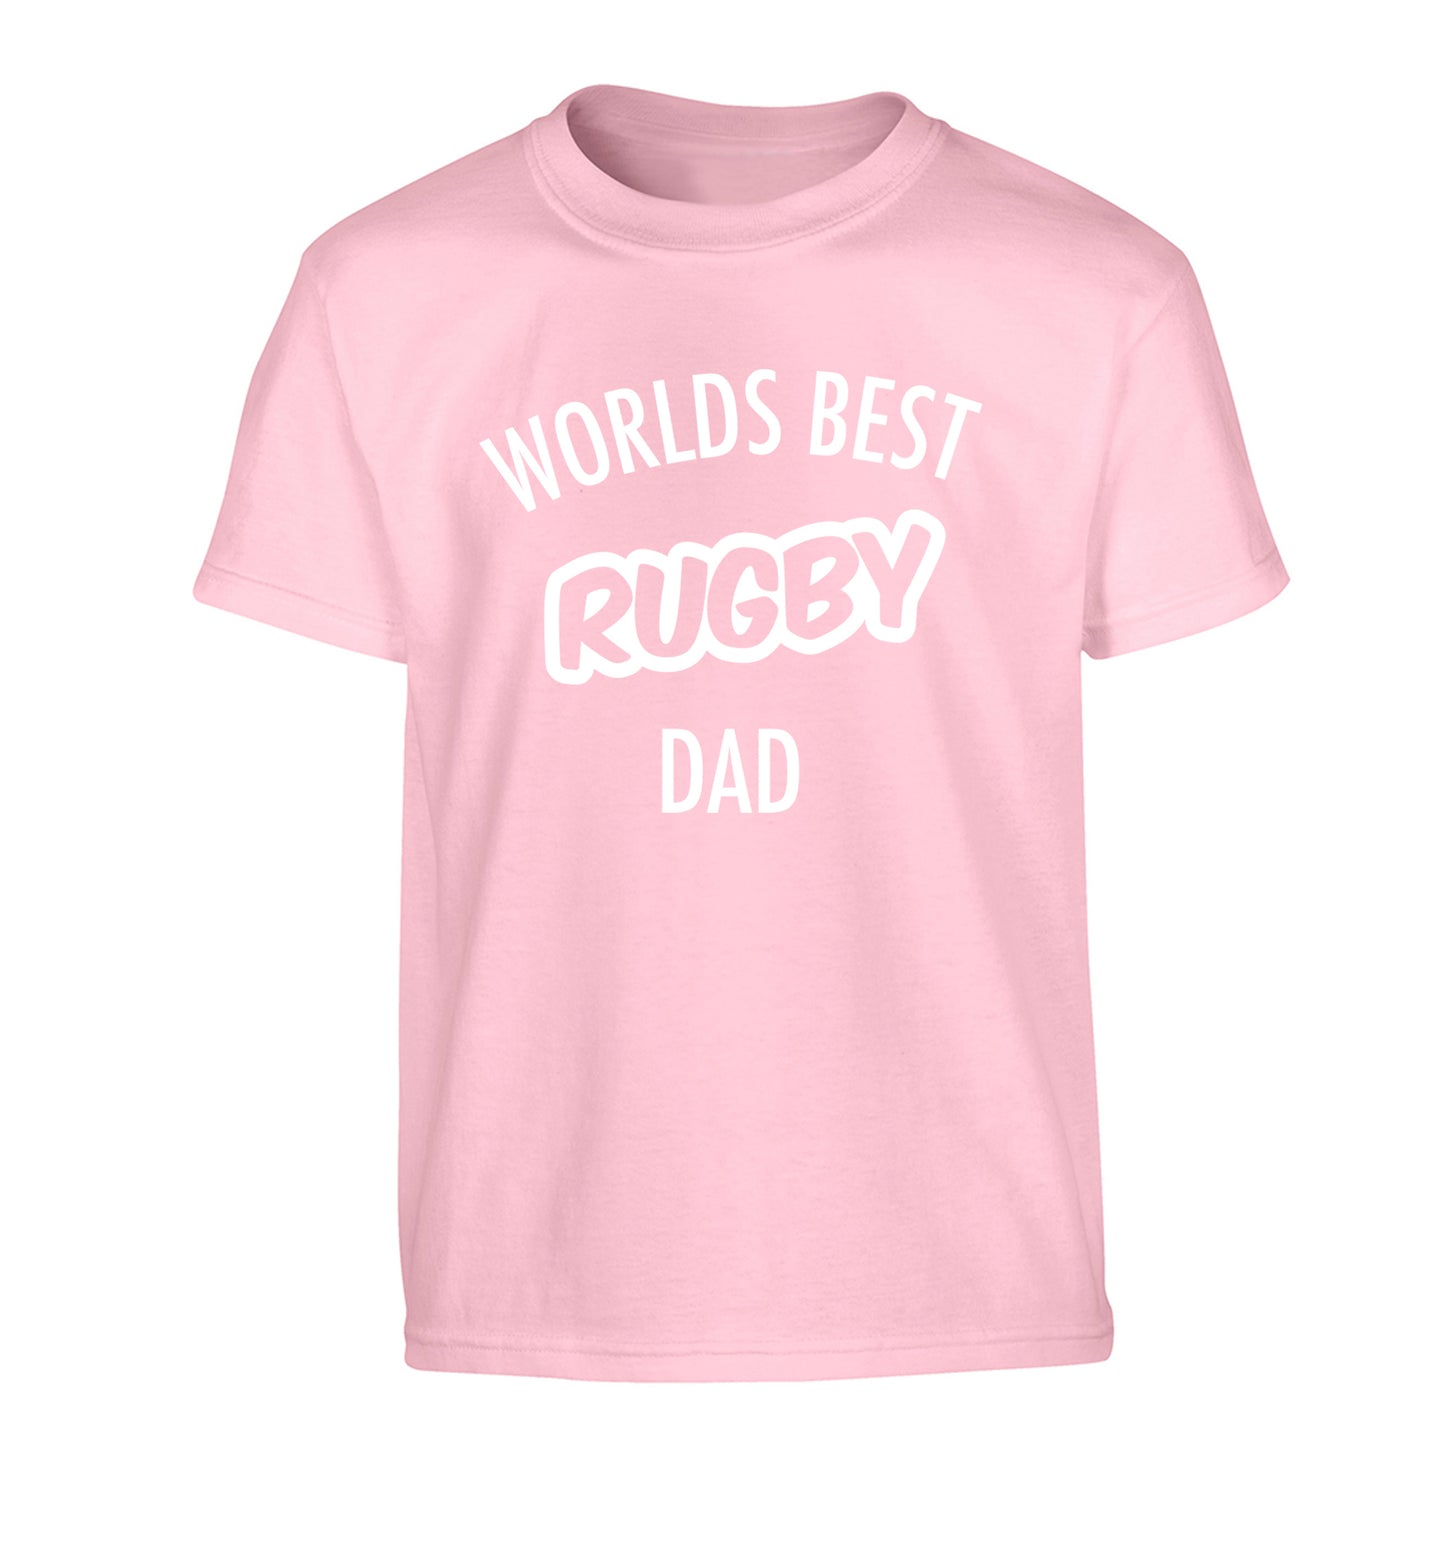 Worlds best rugby dad Children's light pink Tshirt 12-13 Years